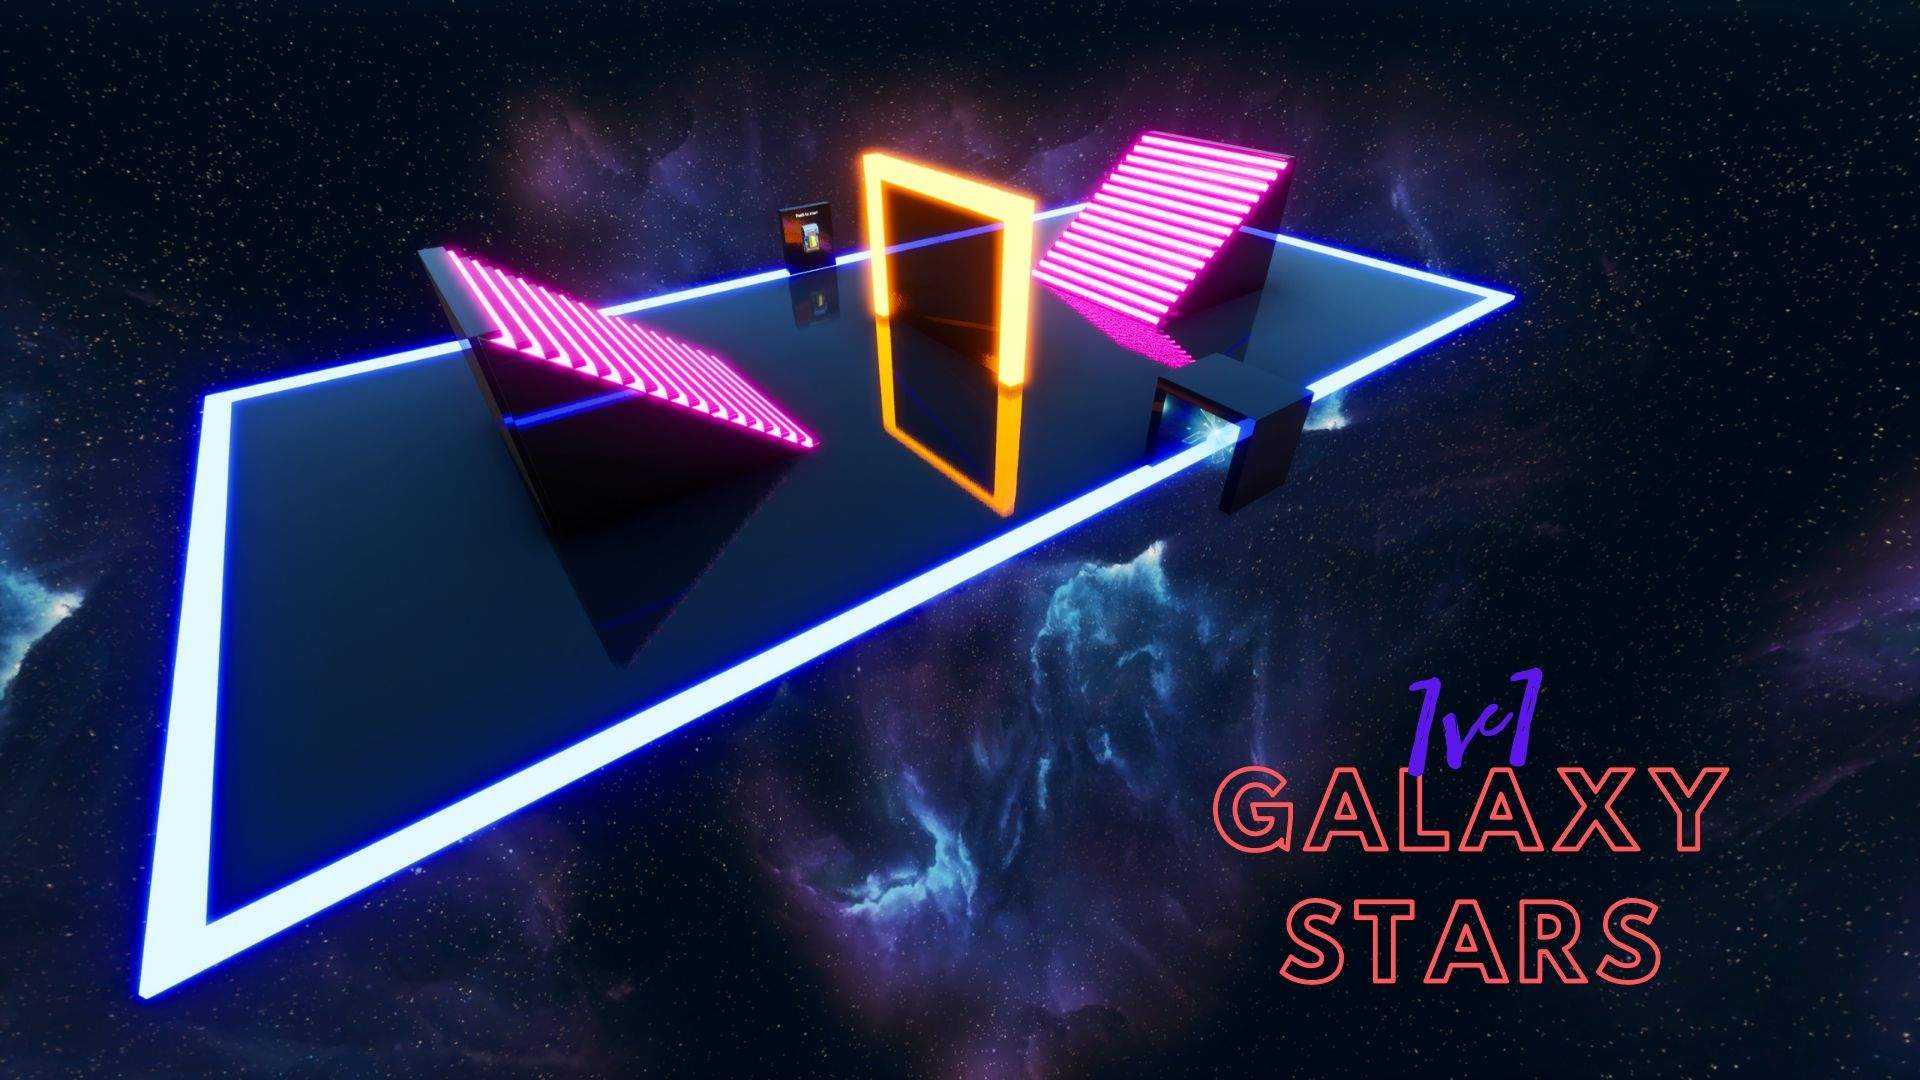 1V1 GALAXY STARS